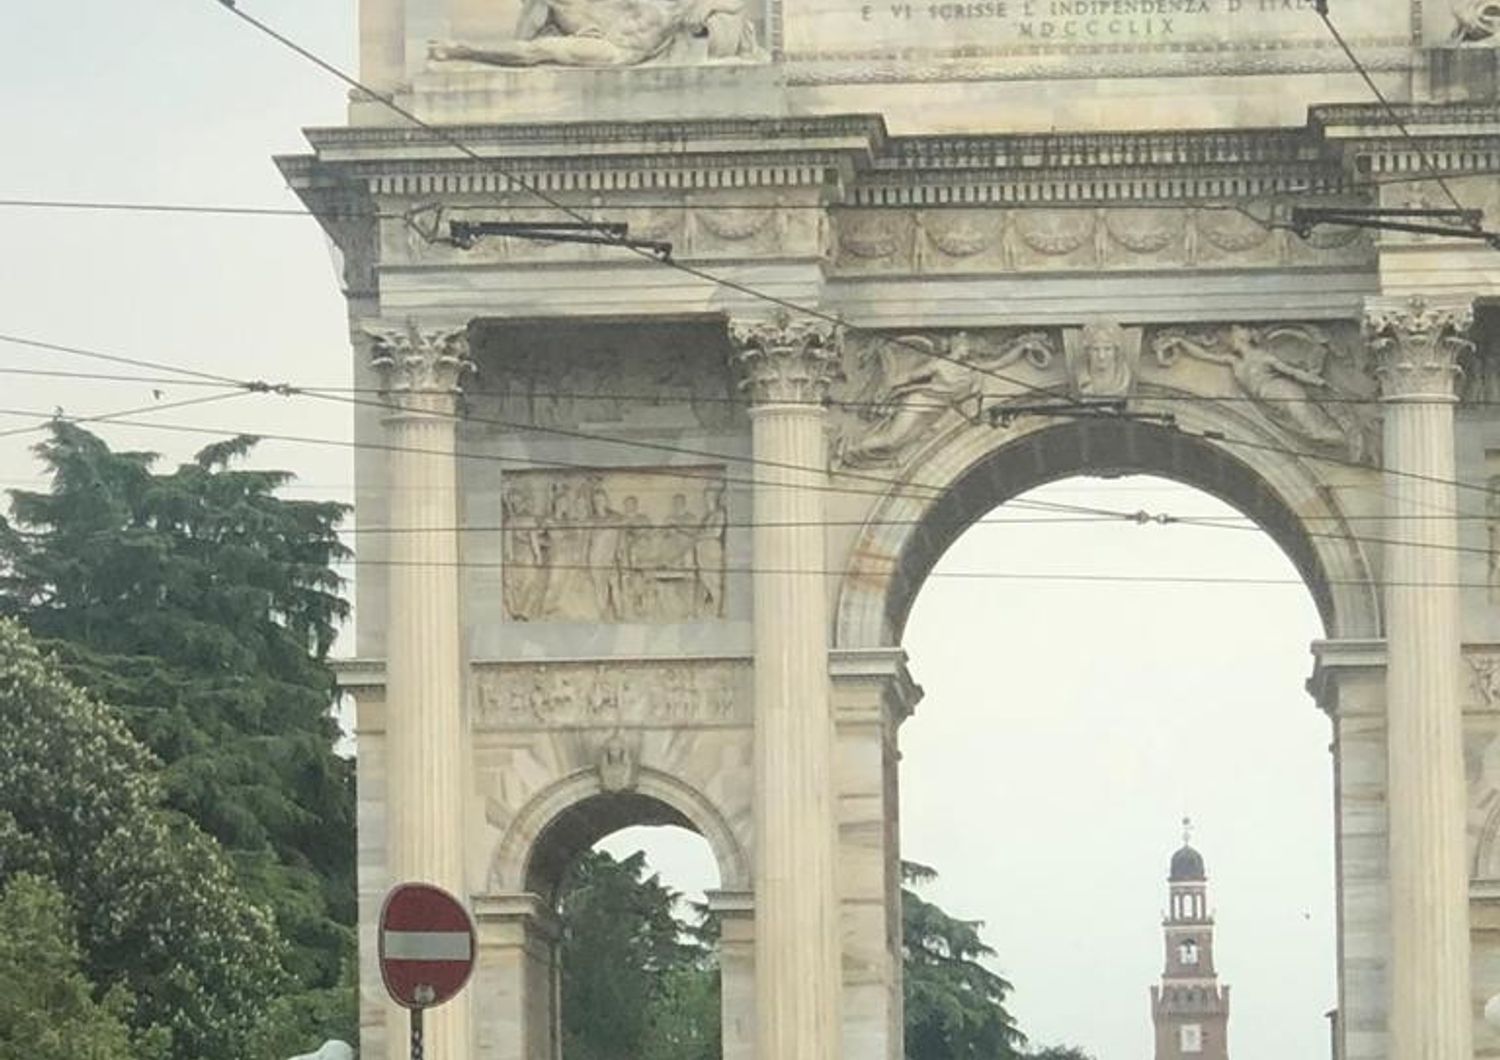 enorme statua arco della pace milano